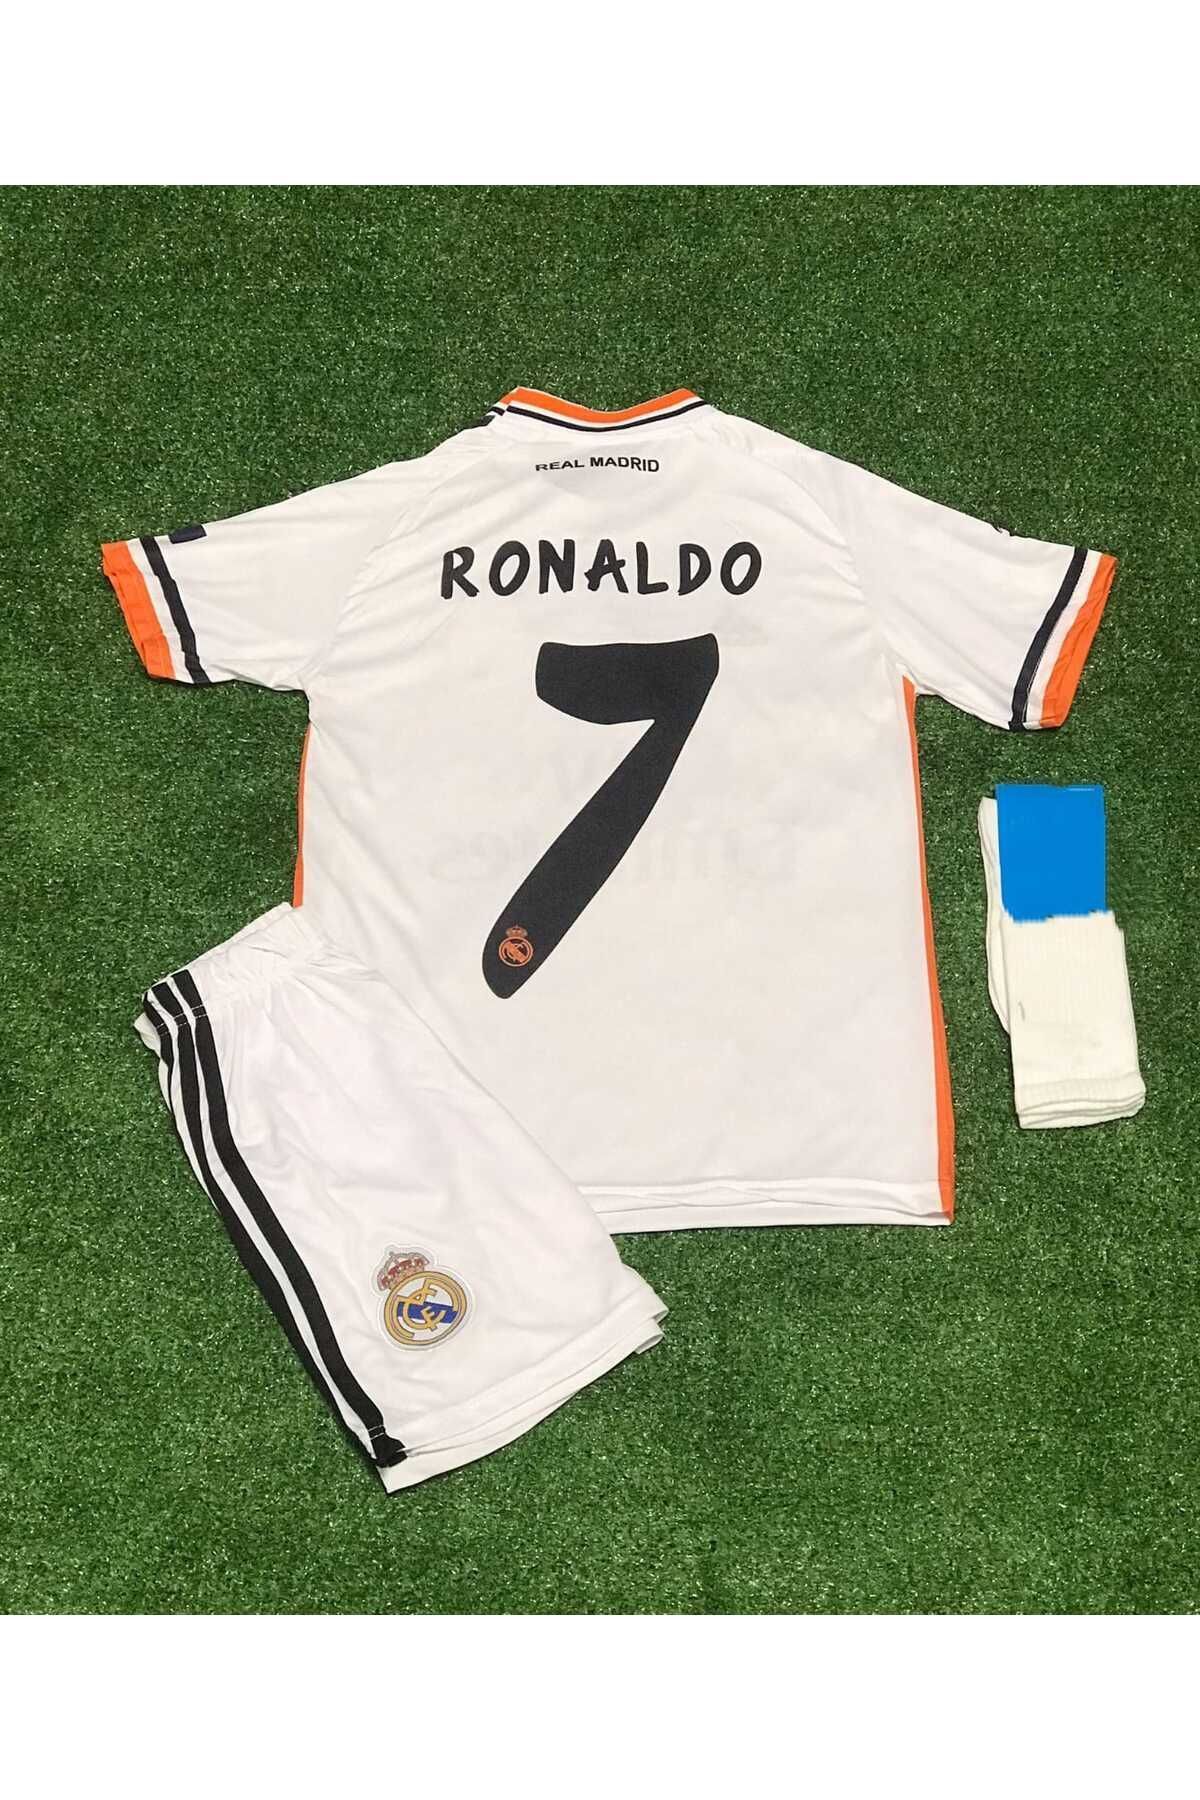 Armageddon Real Madrid 2014 Şampiyonlar Ligi Finali Lizbon C Ronaldo Çocuk Forması Şort Çorap 3'lü Set